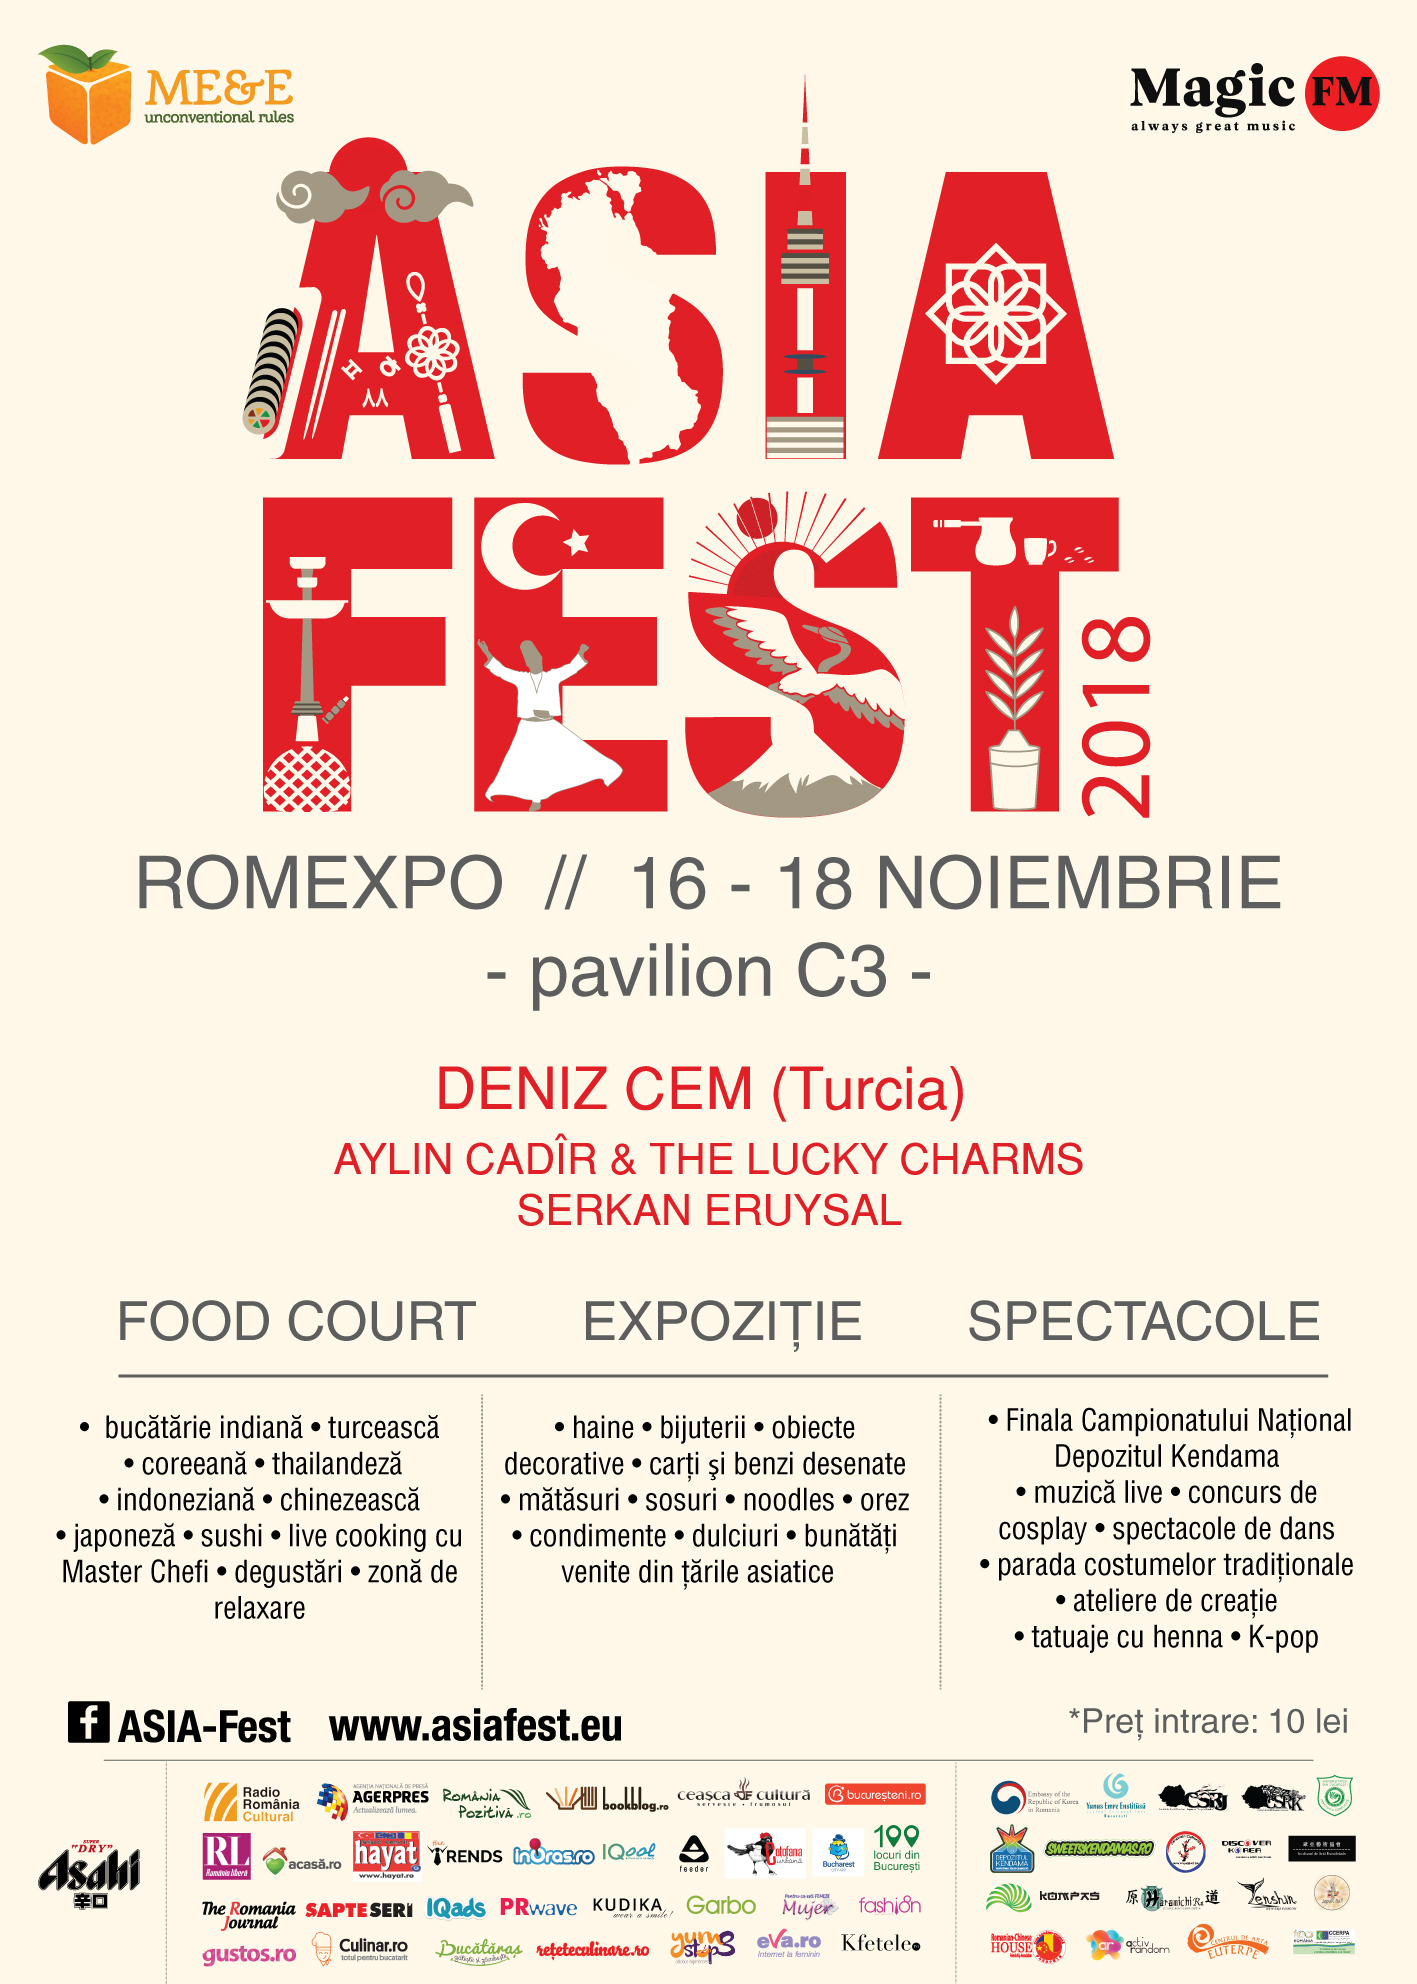 Asia Fest la cea de-a șasea ediție, între 16 – 18 noiembrie, la Romexpo